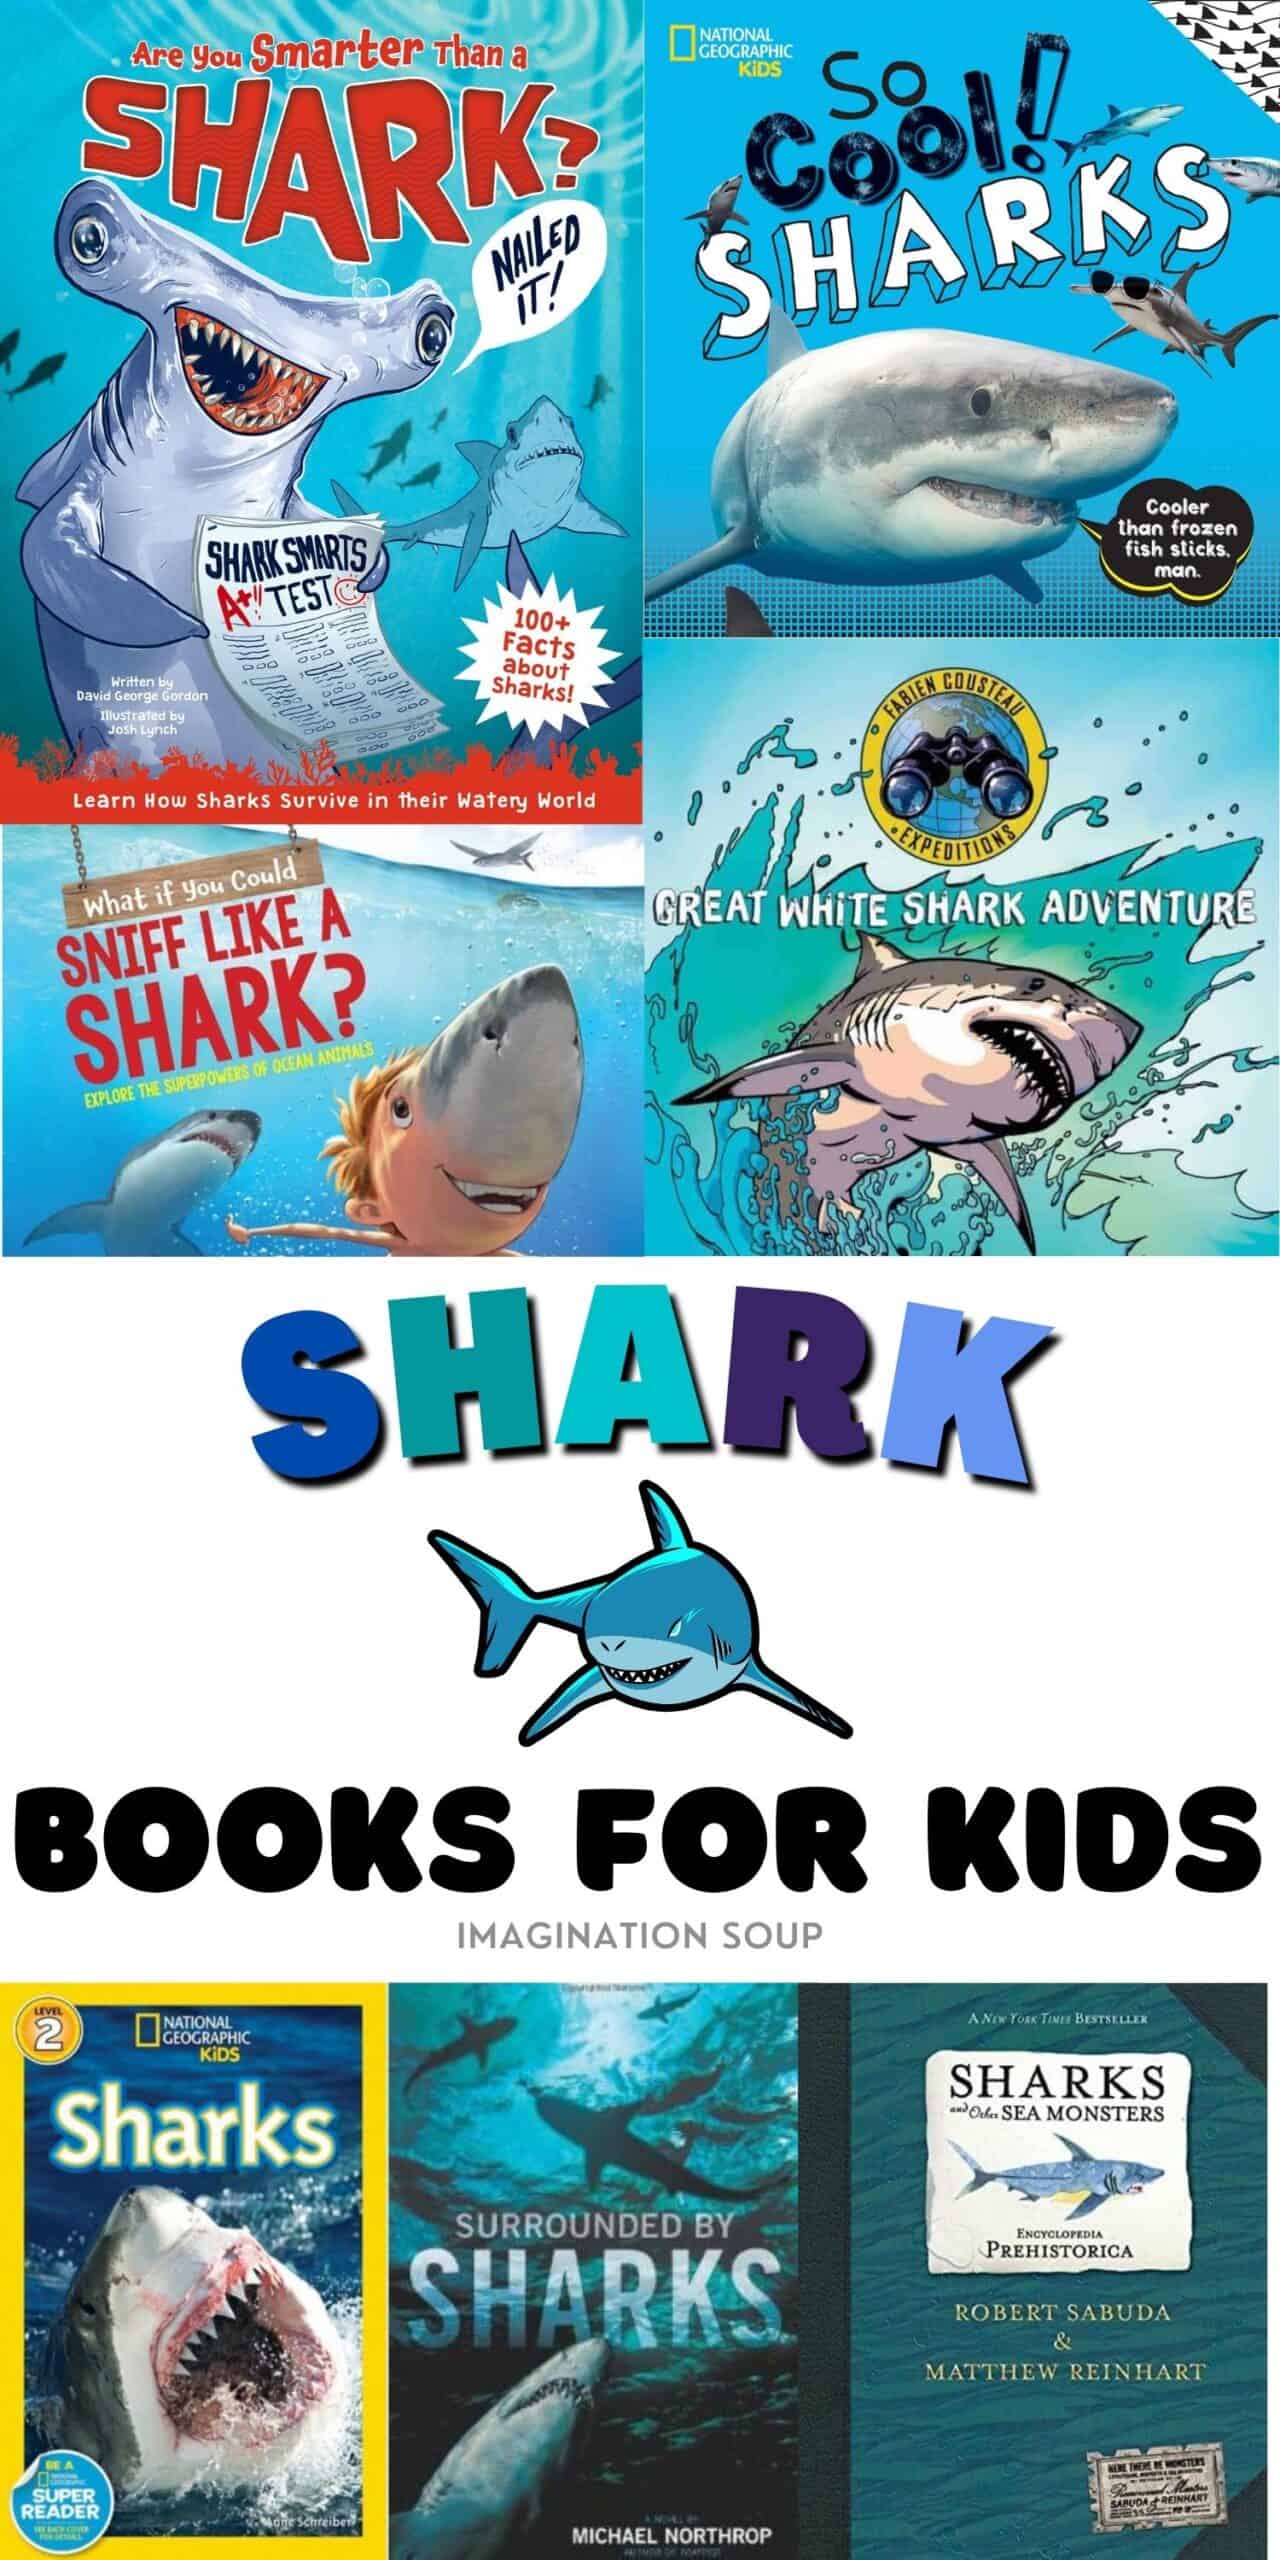 Shark books for kids